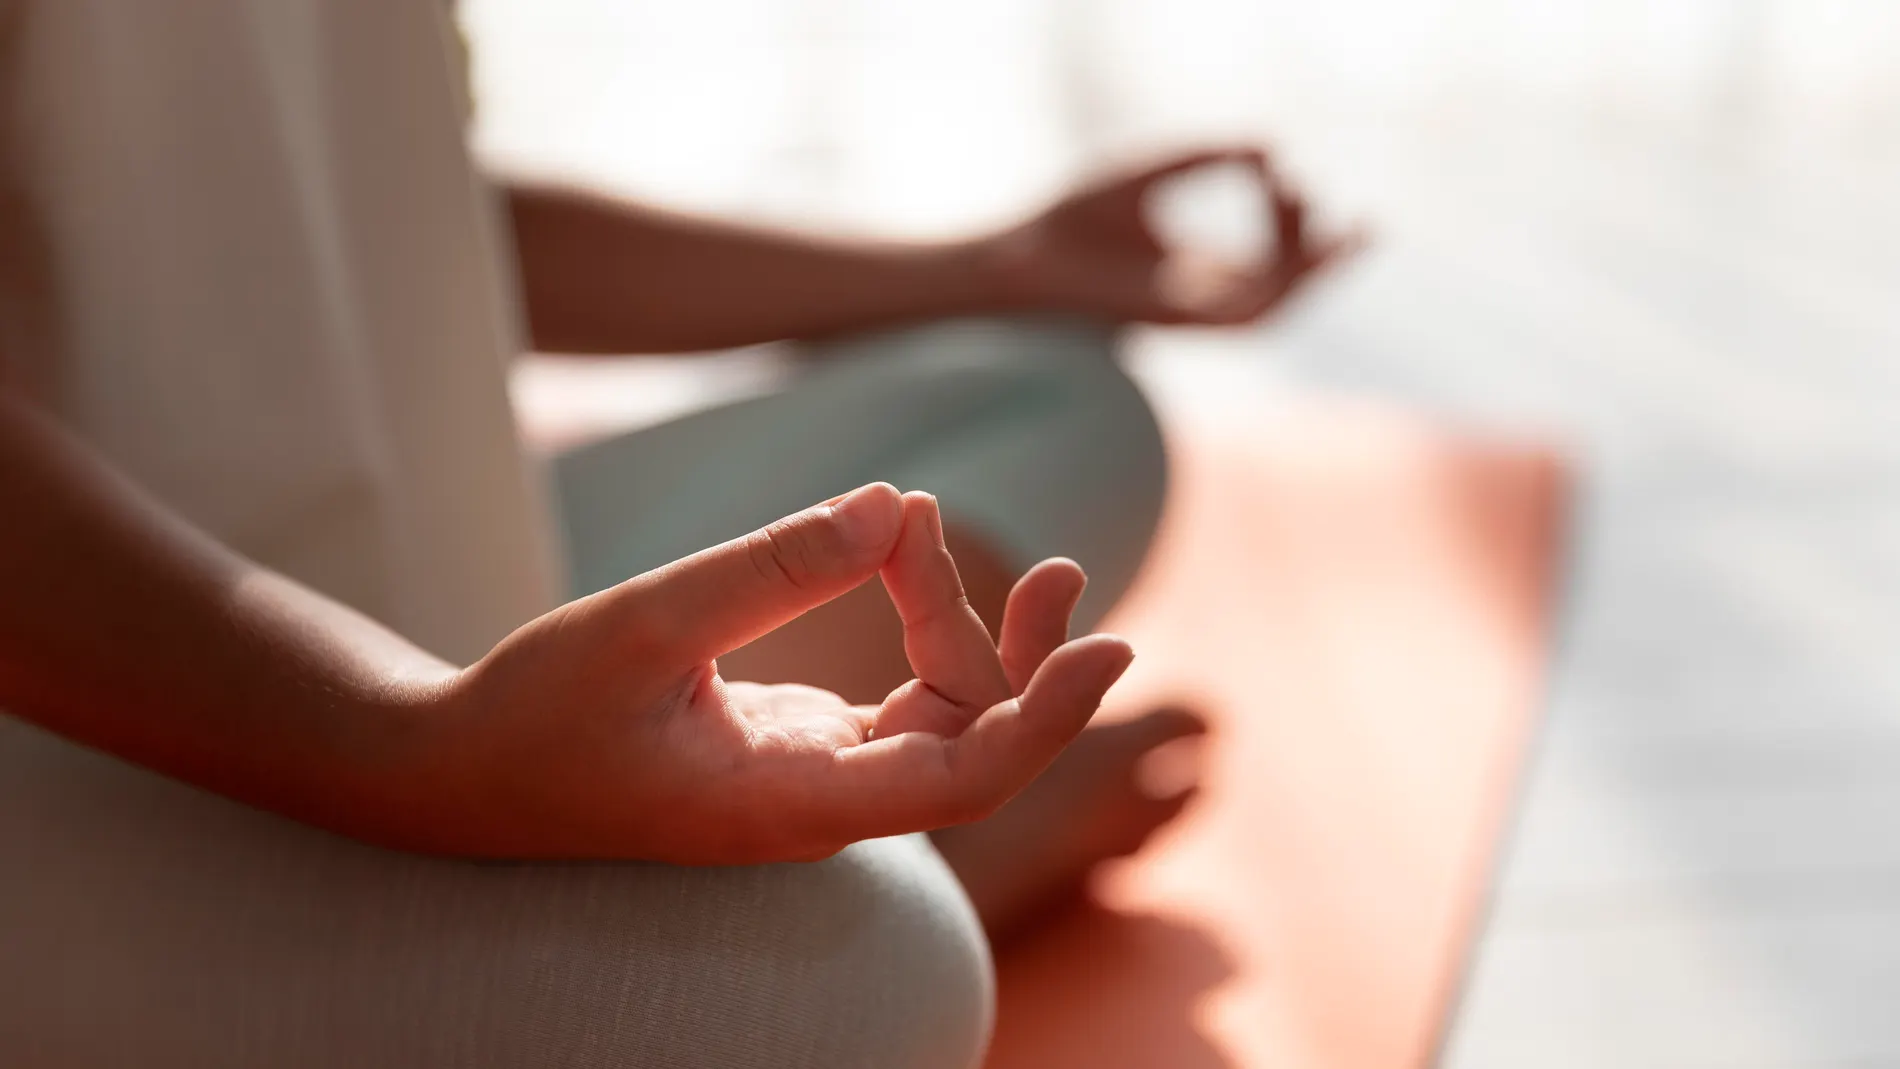 Nuevo año más saludable practicando yoga y meditación